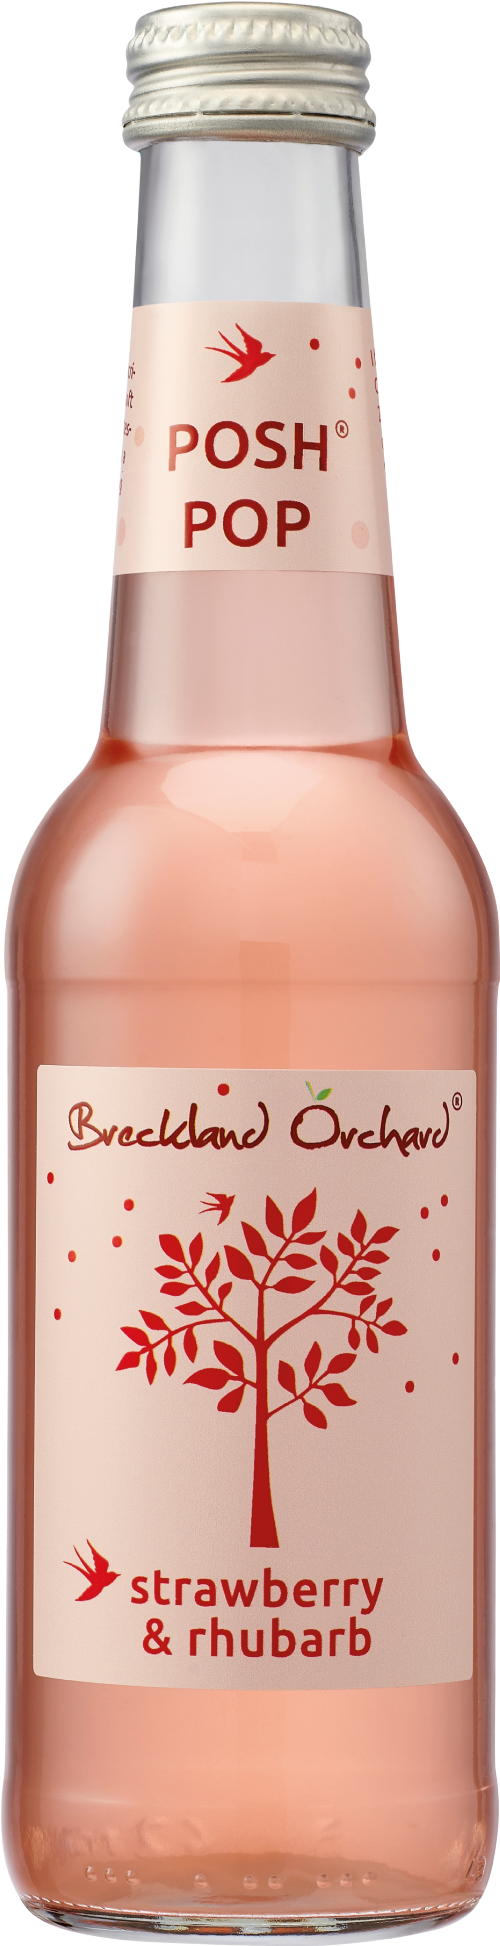 BRECKLAND ORCHARD Posh Pop - Strawberry & Rhubarb 275ml